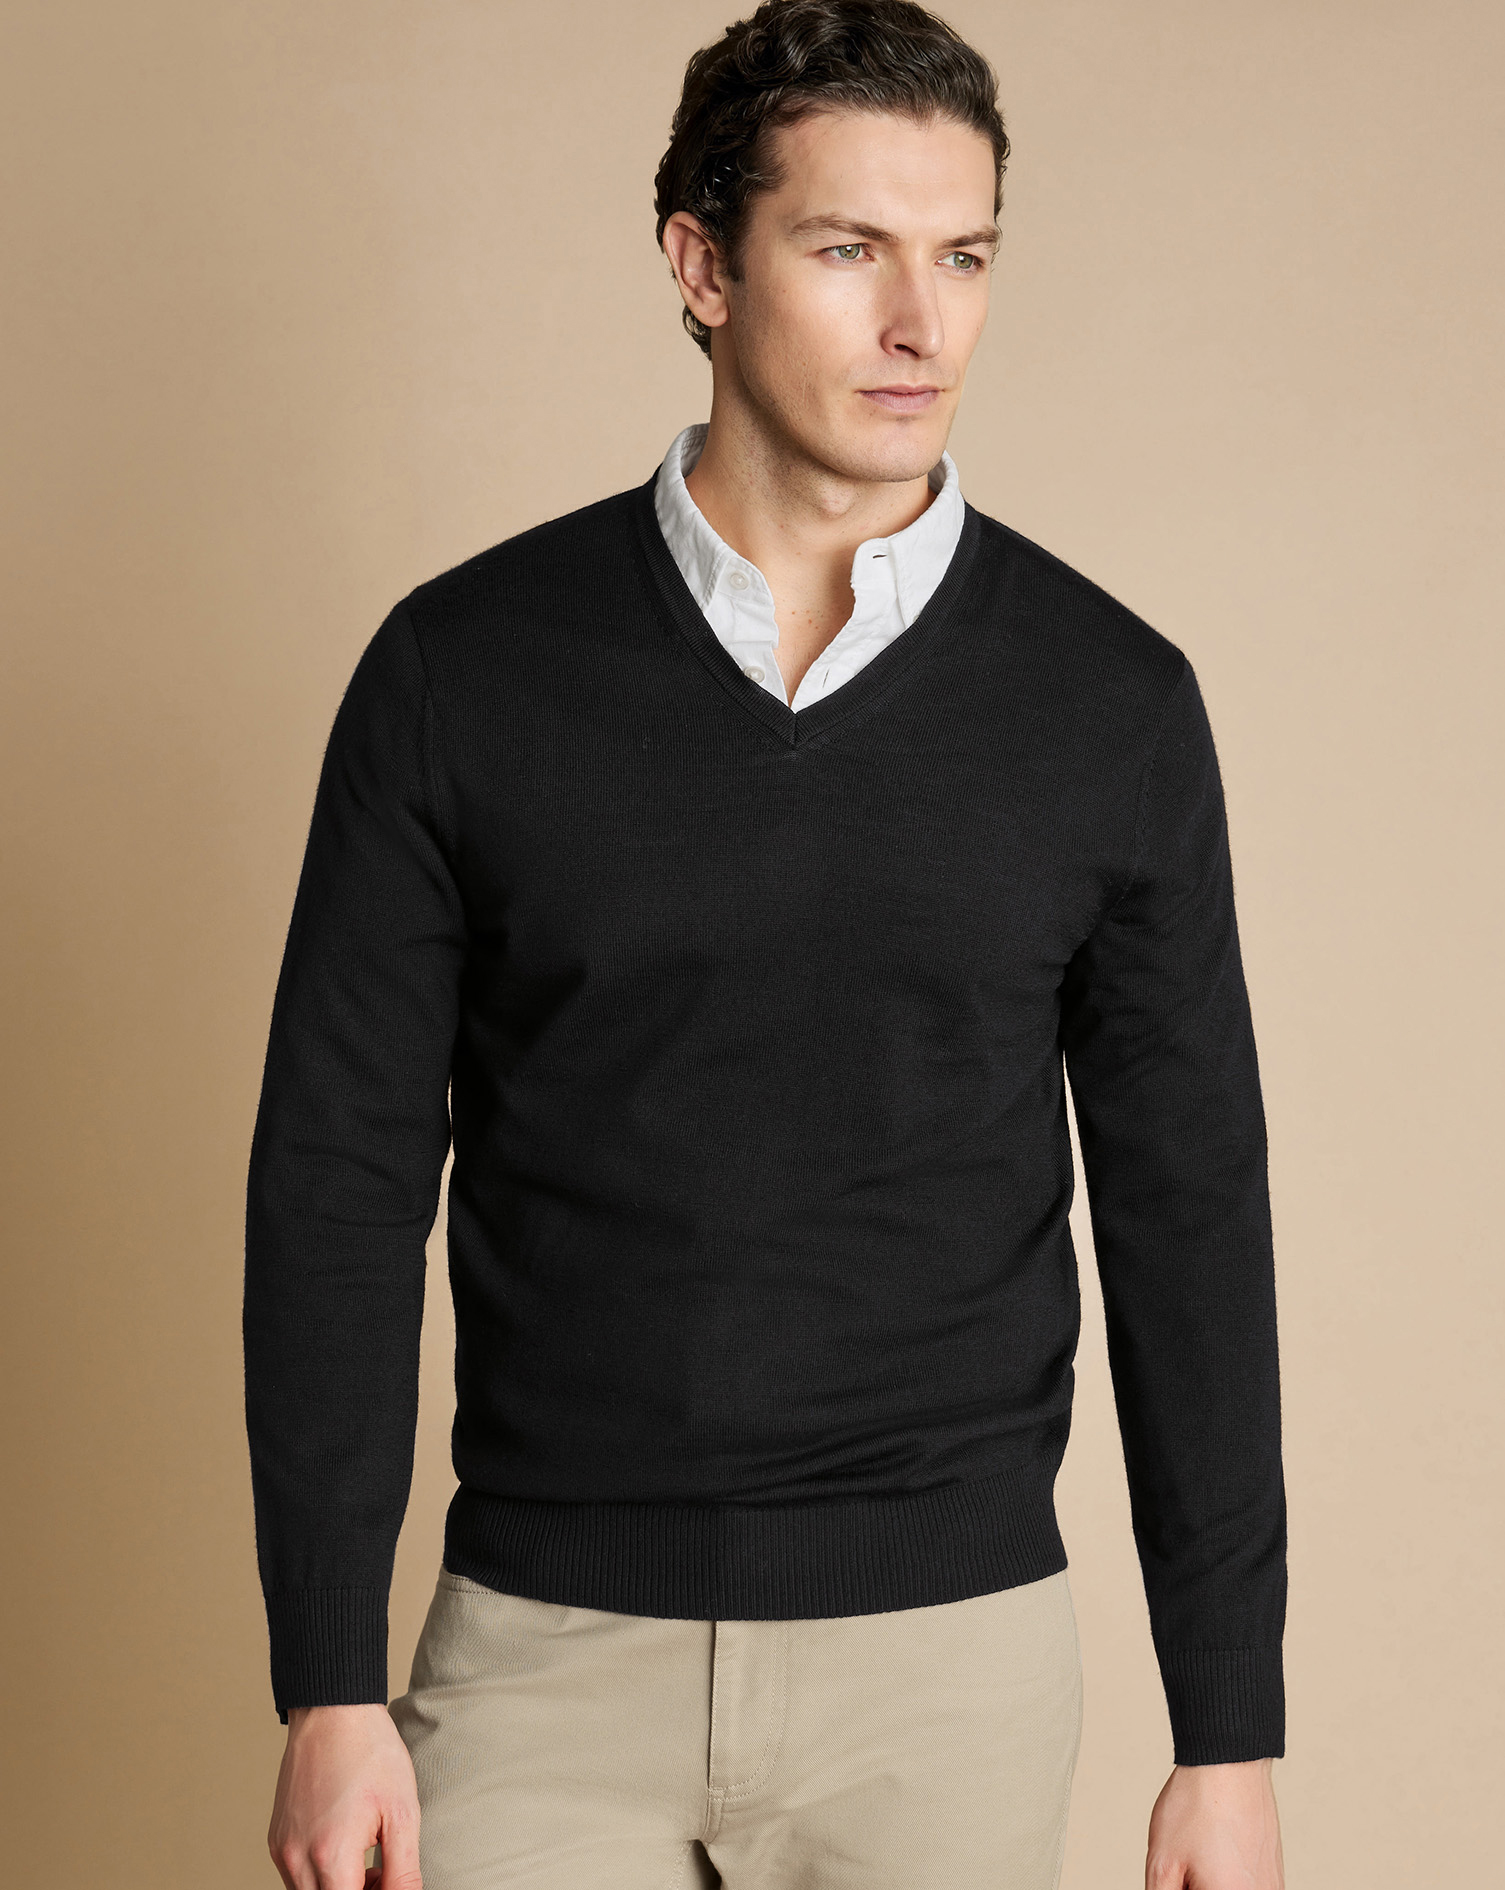 Men's Charles Tyrwhitt V-Neck Sweater - Black Size Small Merino
